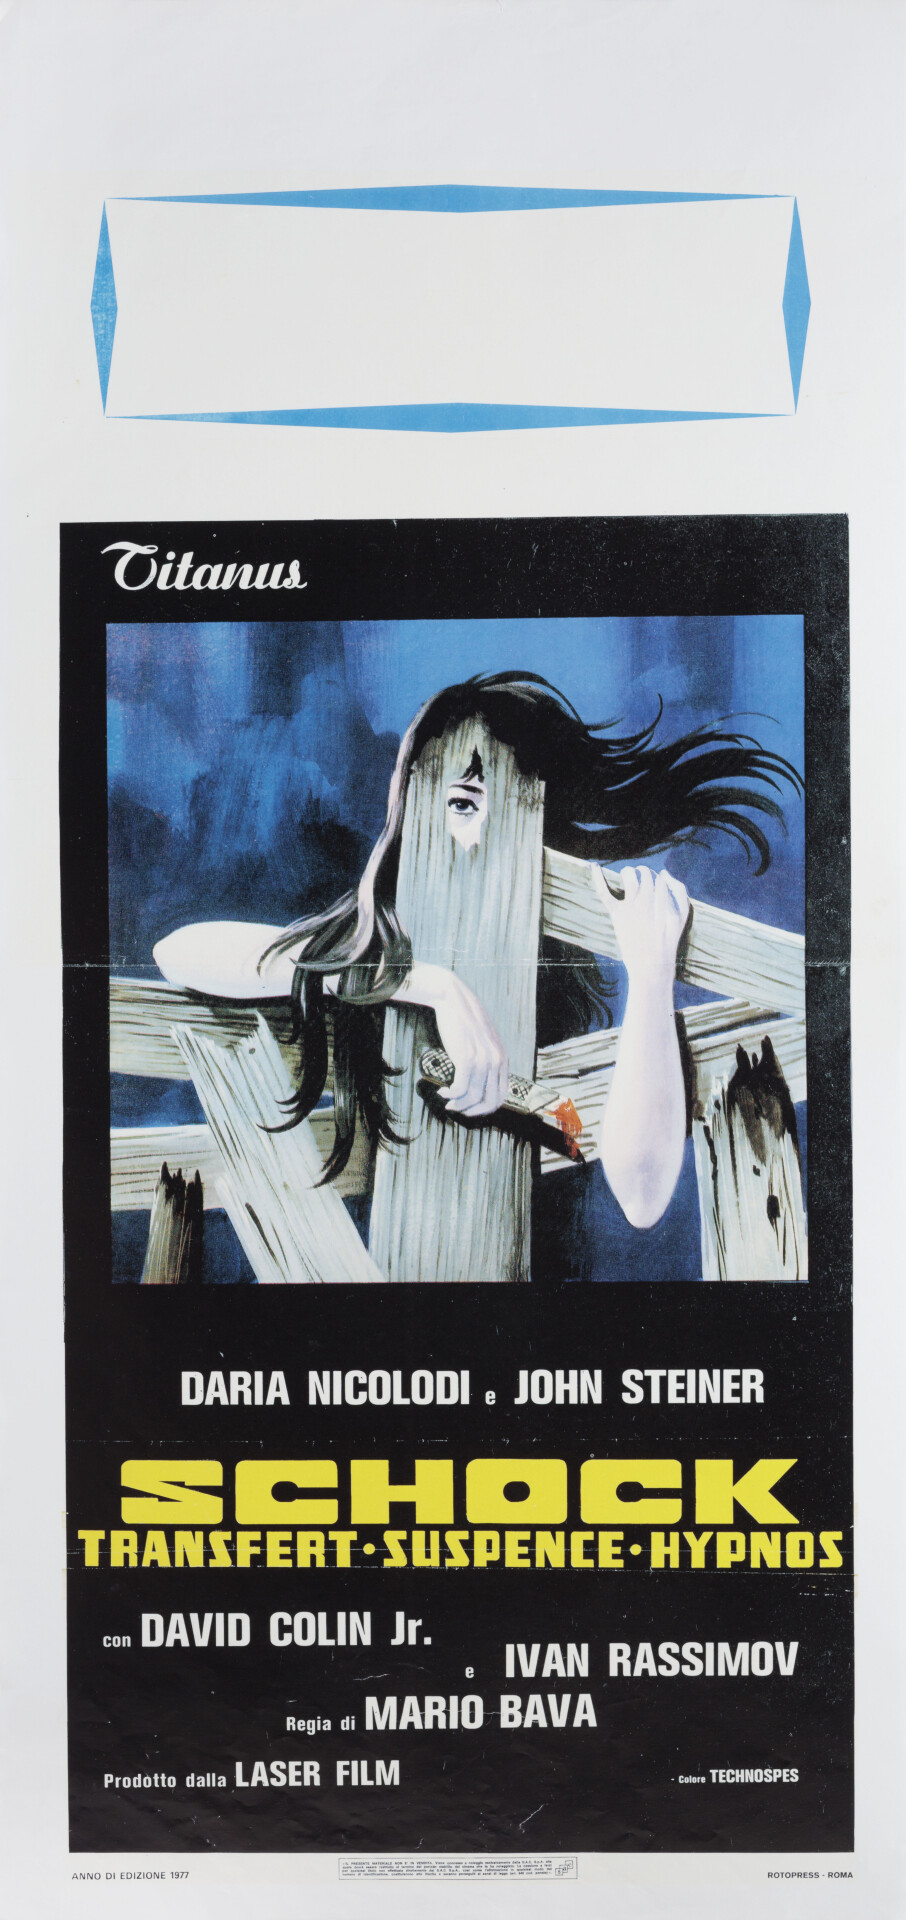 Шок (Shock, 1977), режиссёр Марио Бава, итальянский постер к фильму (ужасы, 1977 год)